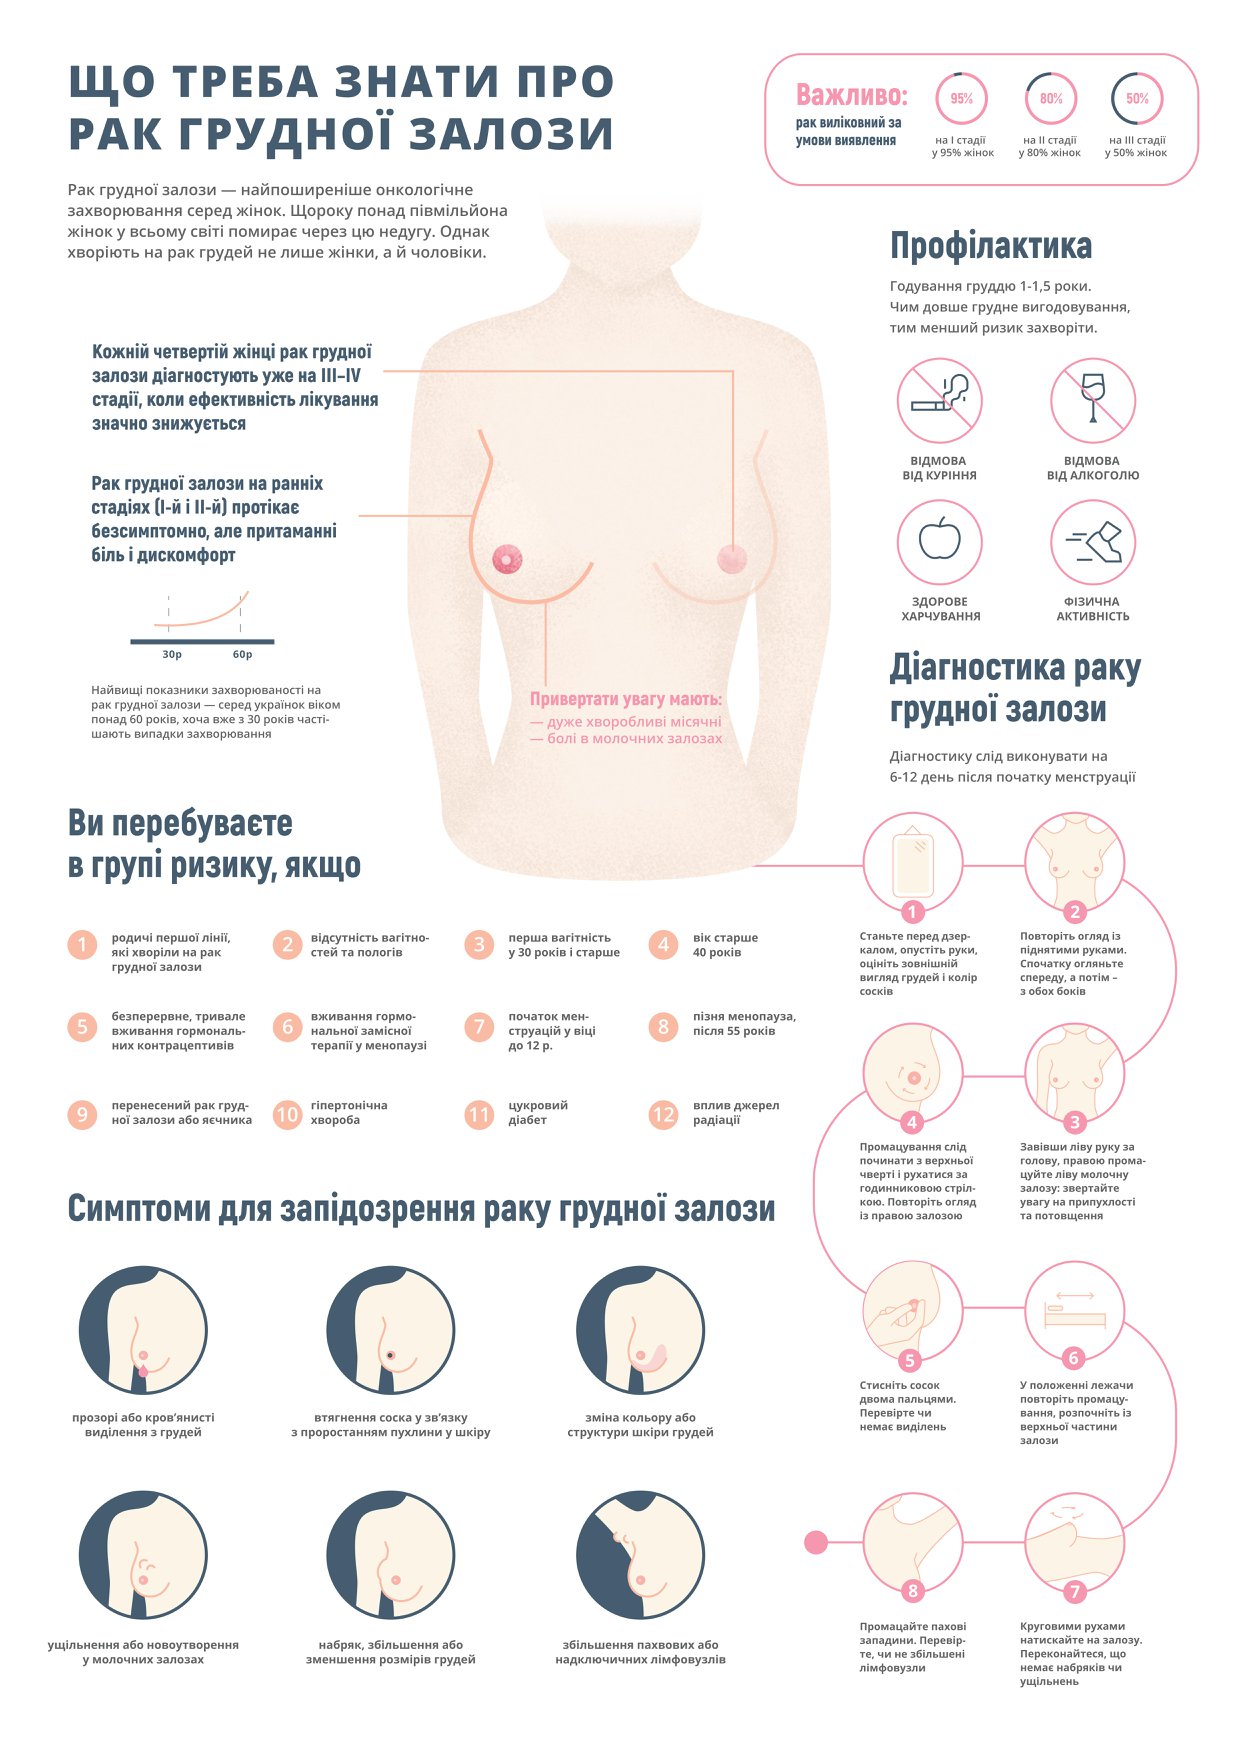 первые признаки рака груди у женщин симптомы фото 23